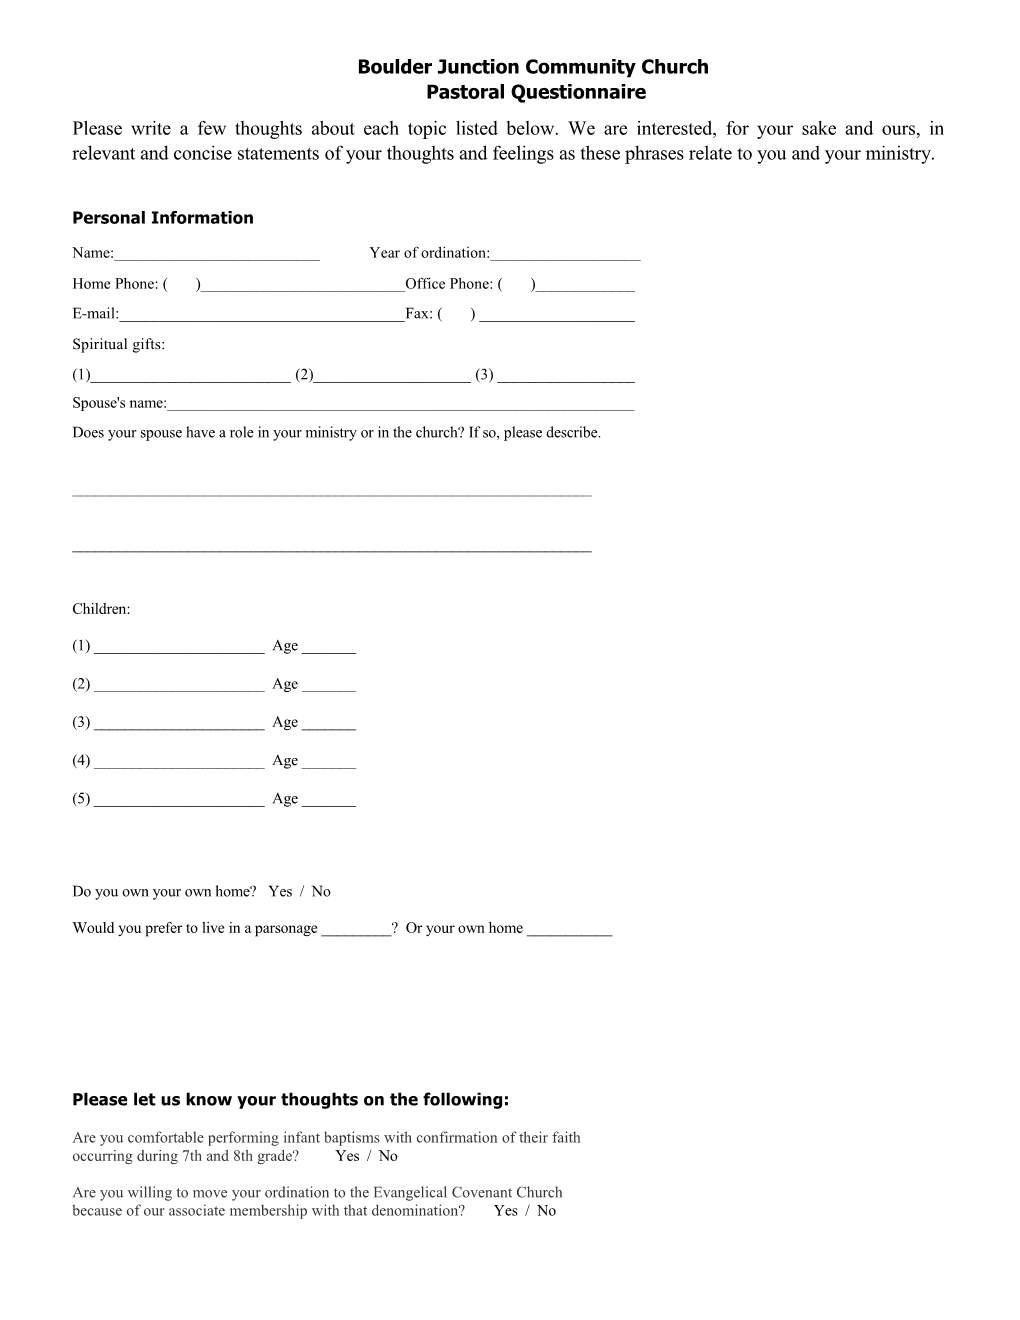 Boulder Junction Community Church Pastoral Questionnaire